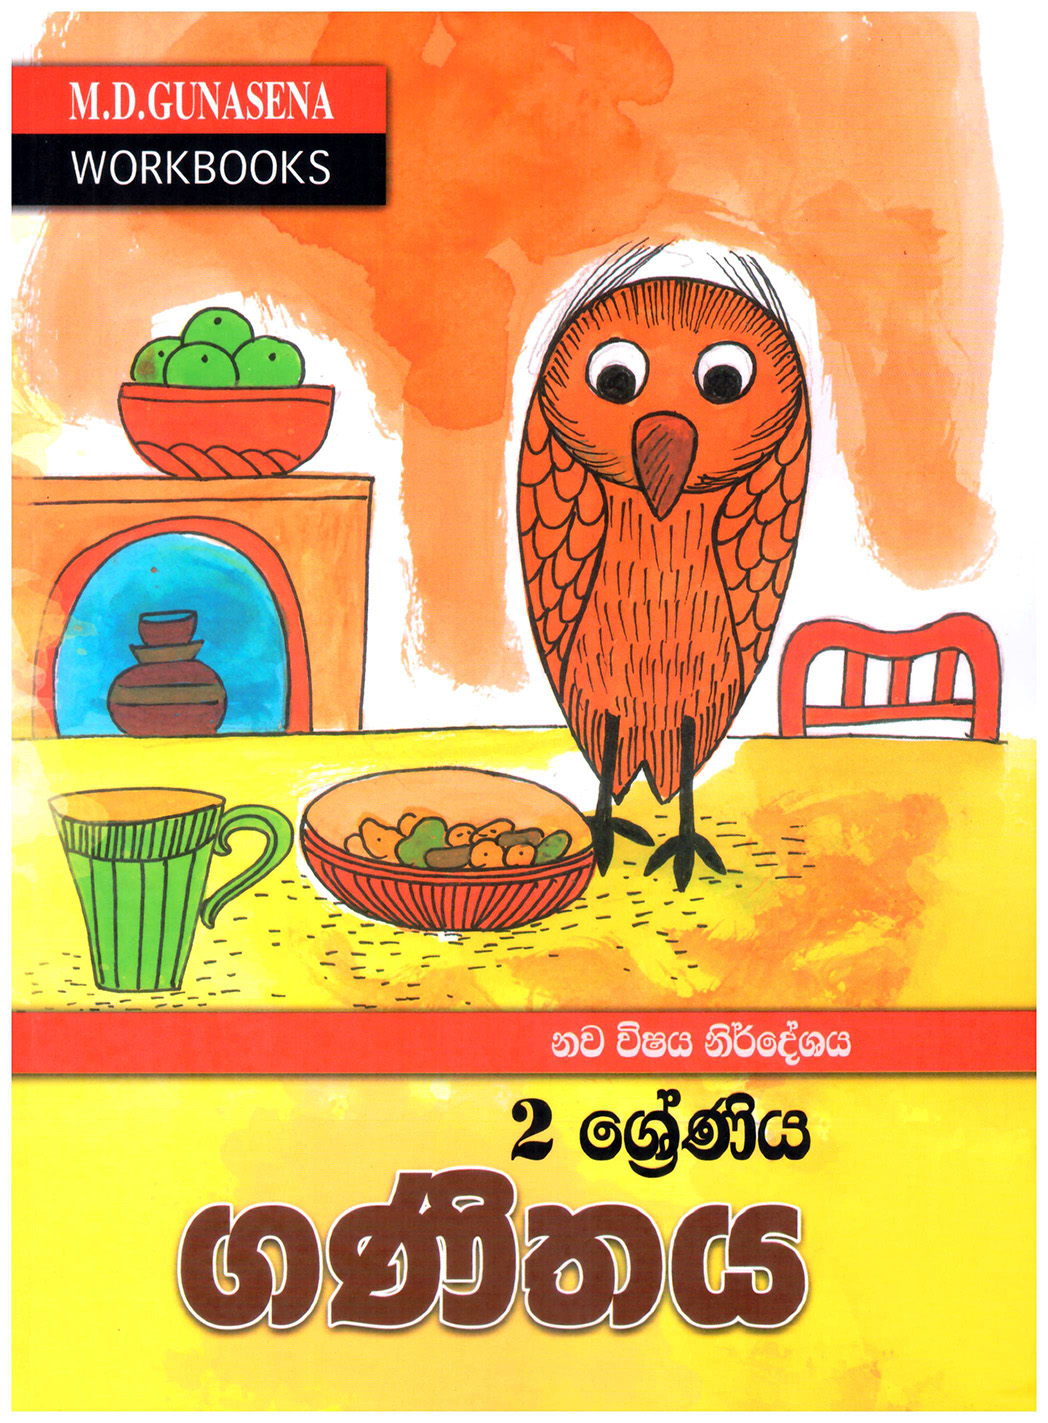 M.D. Gunasena Workbooks : Ganithaya 02 Shreniya